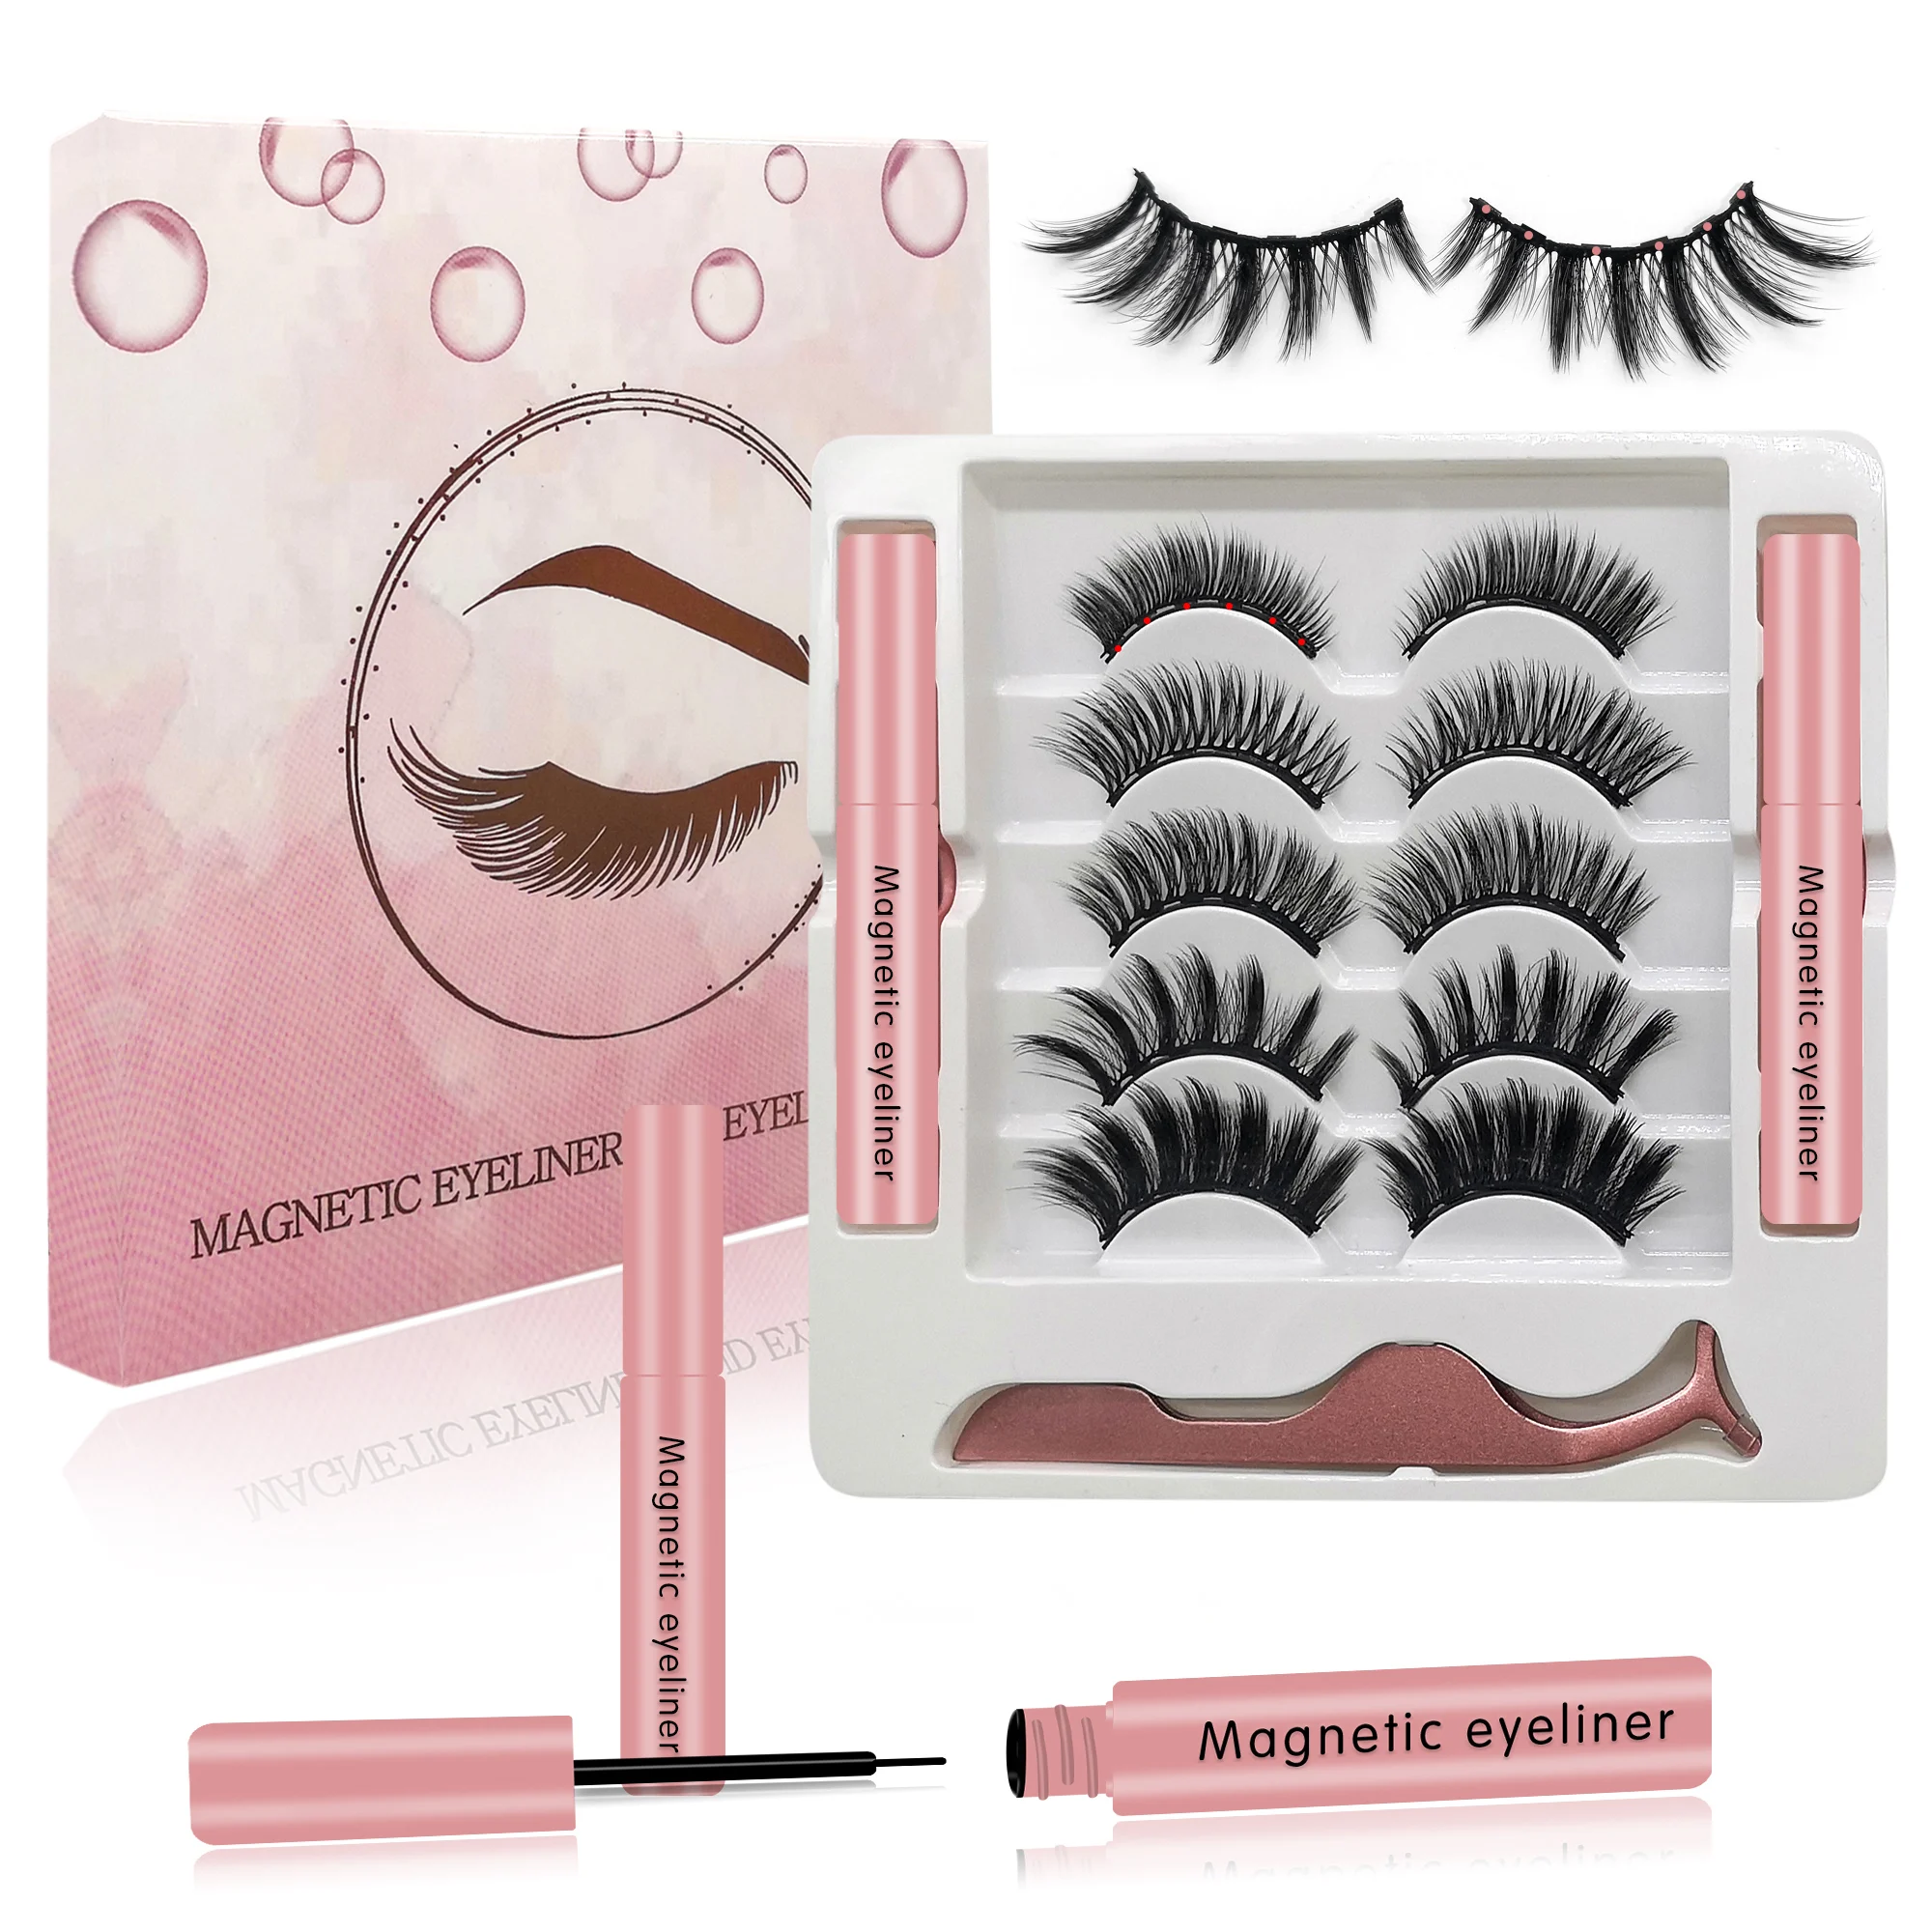 

2021 new arrivals magnetic eyelashes manufacturer eyelash vendor customized boxes magnetic mink eyelashes with eyeliner, Black color